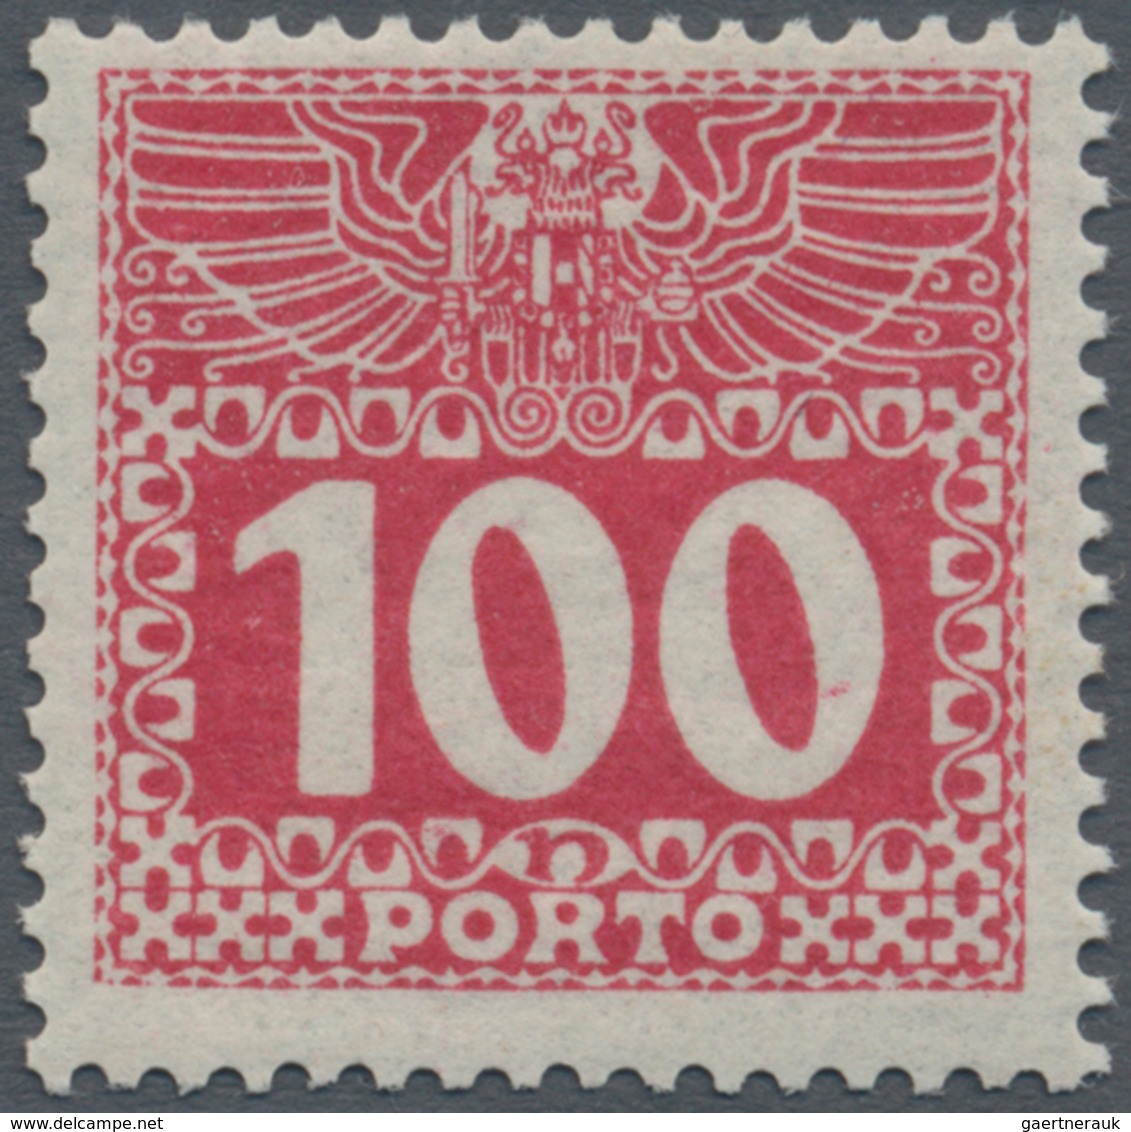 Österreich - Portomarken: 1909, 1 H. bis 100 H., dünnes, fast durchsichtiges Papier, komplette Serie